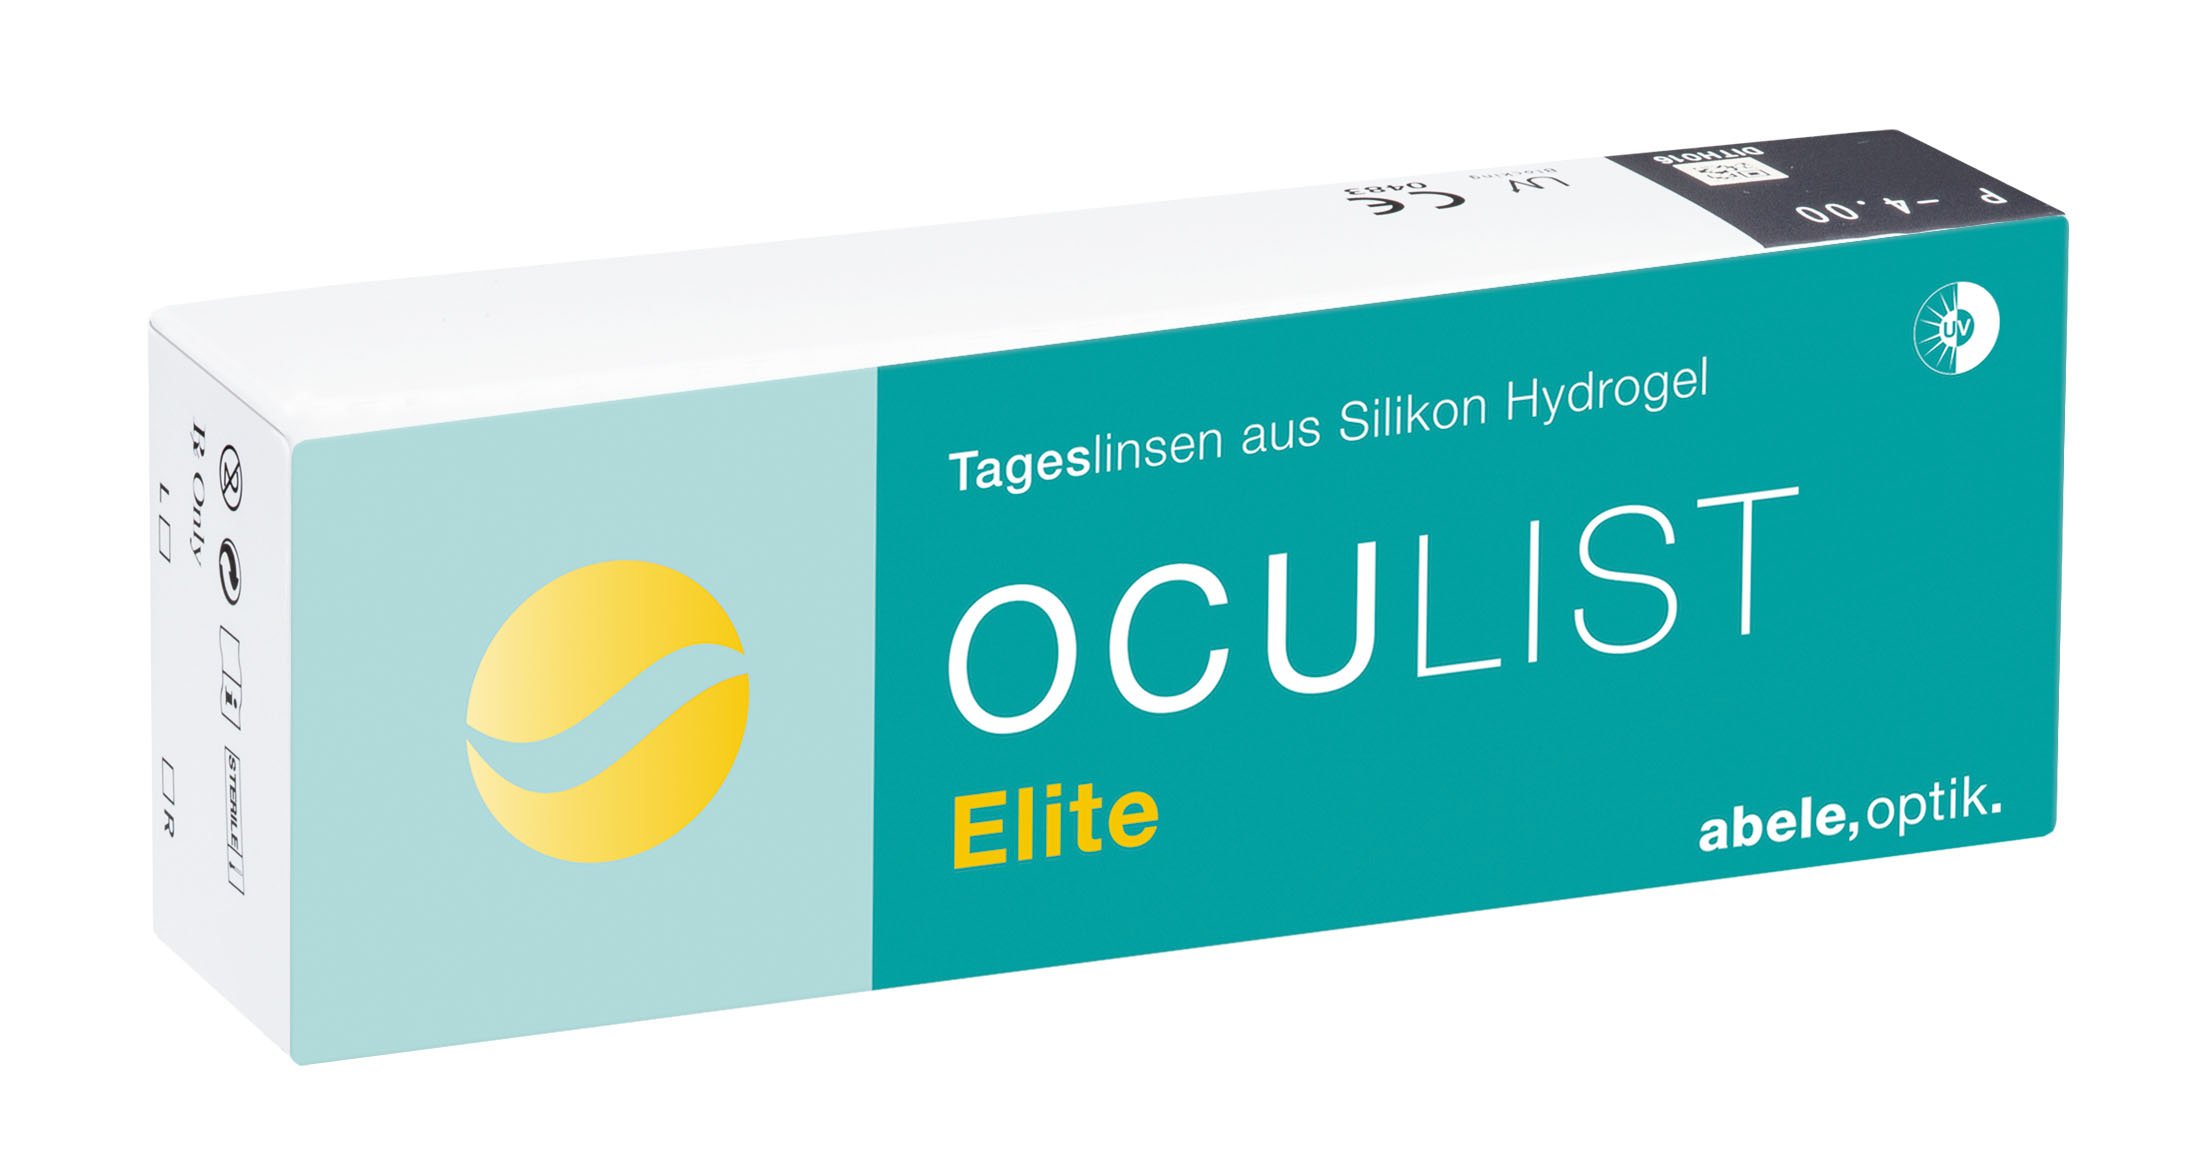 Oculist Elite Tageslinse, Abele Optik (30 Stk.)